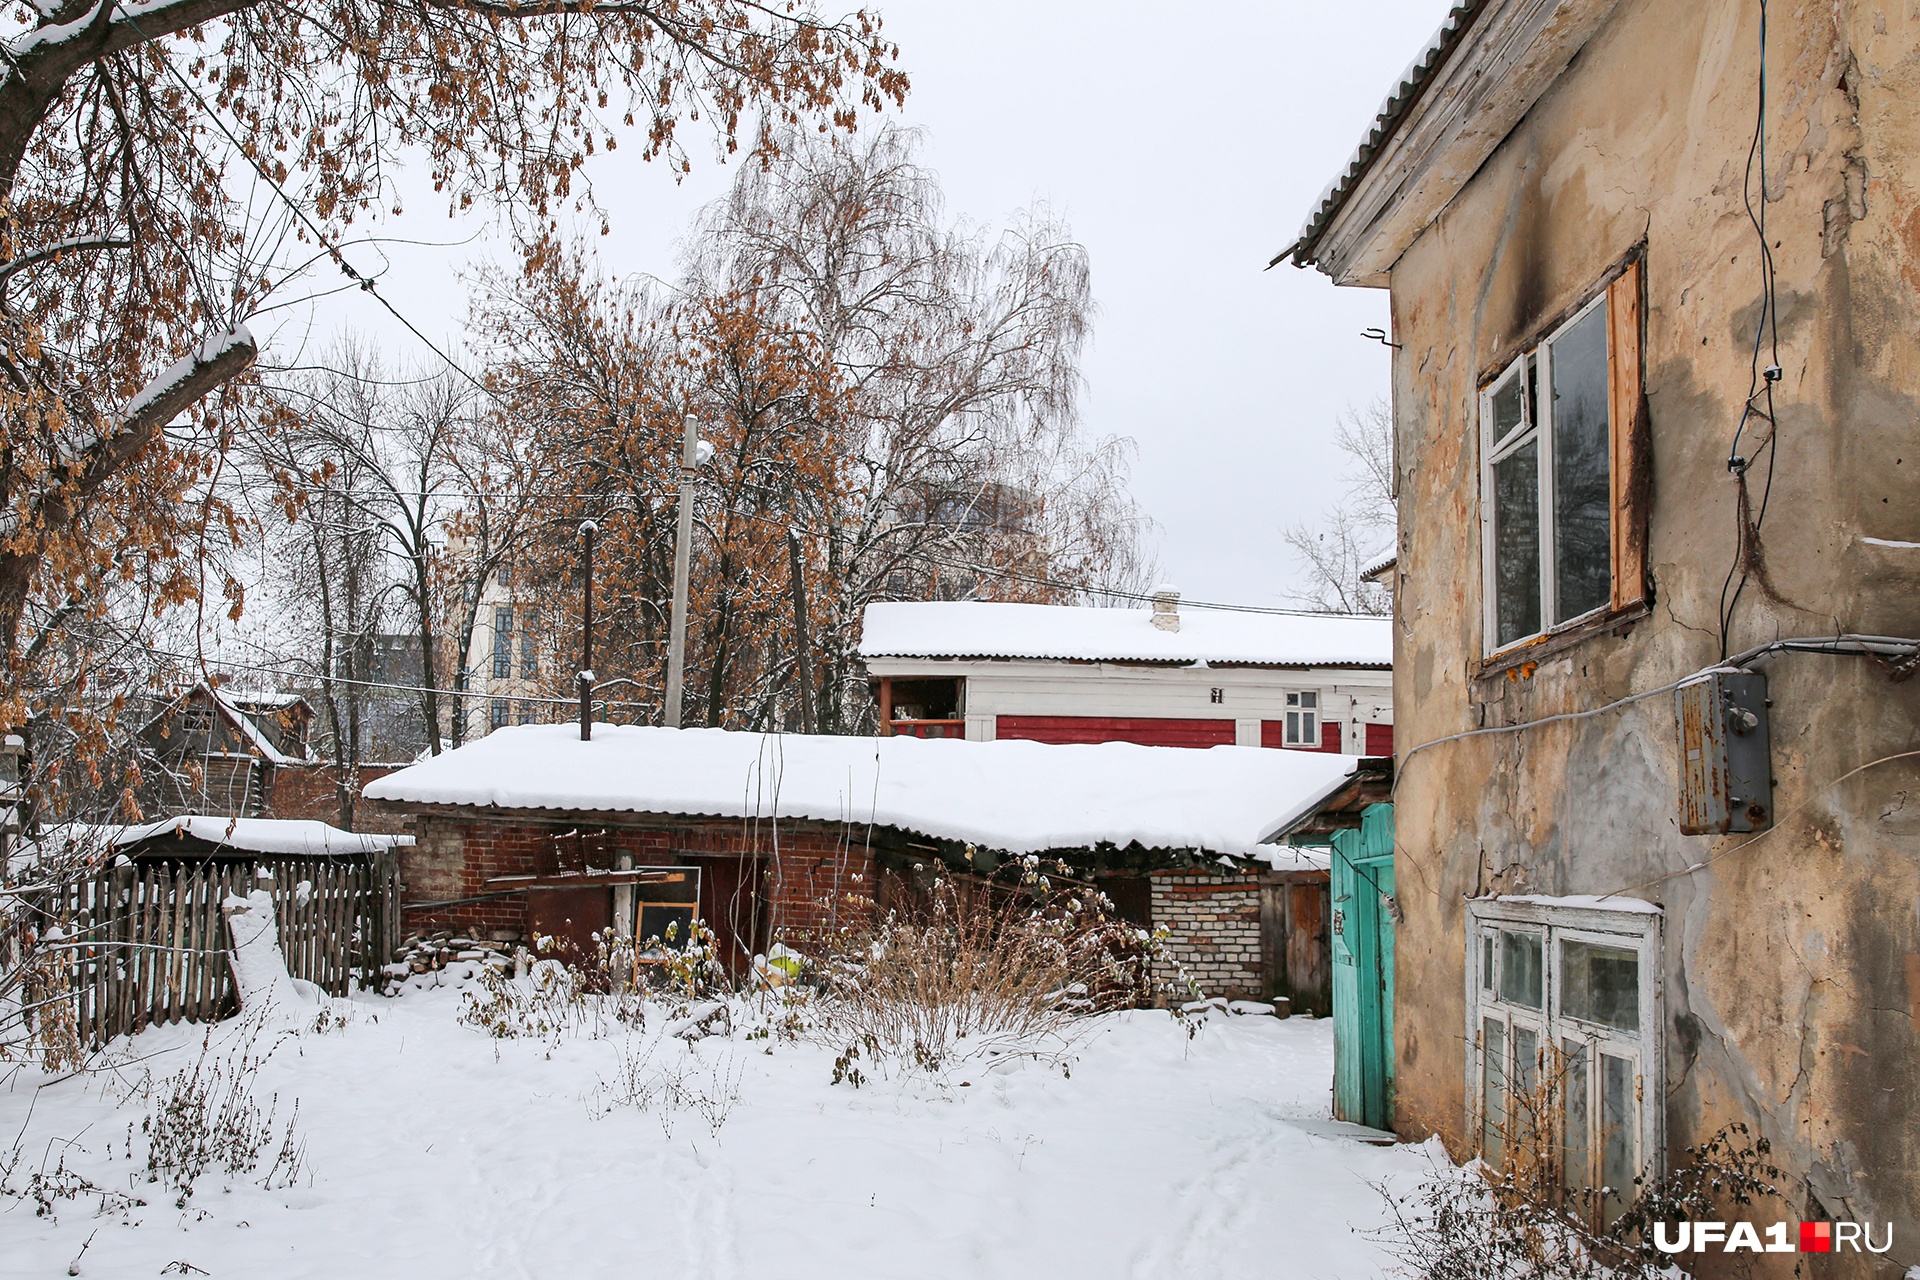 Жилой дом на улице Гоголя выглядит безобразно